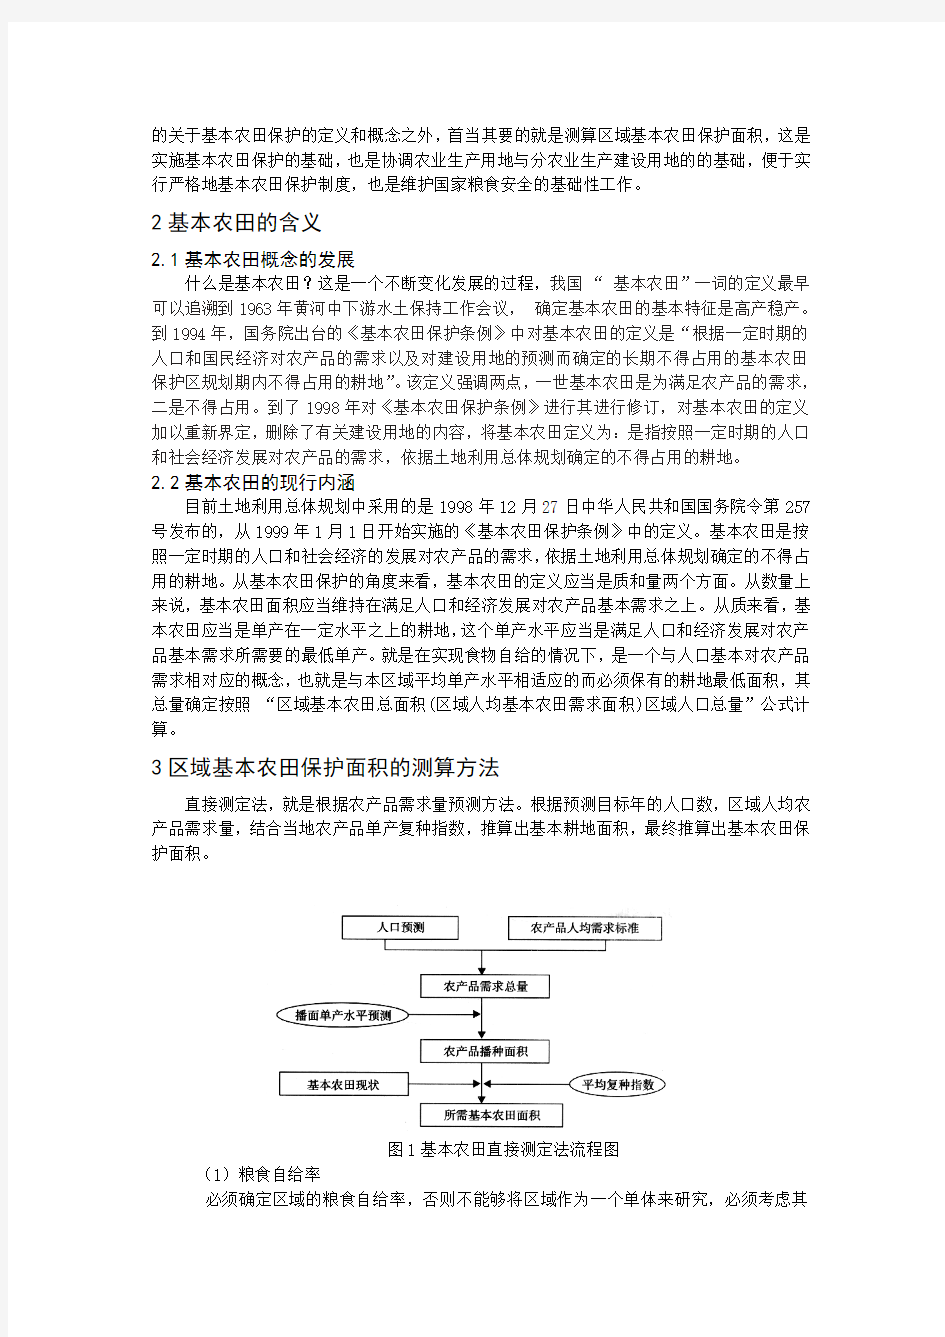 土地利用规划论文——基本农田保护面积的测算方法——以江苏省为例(1)